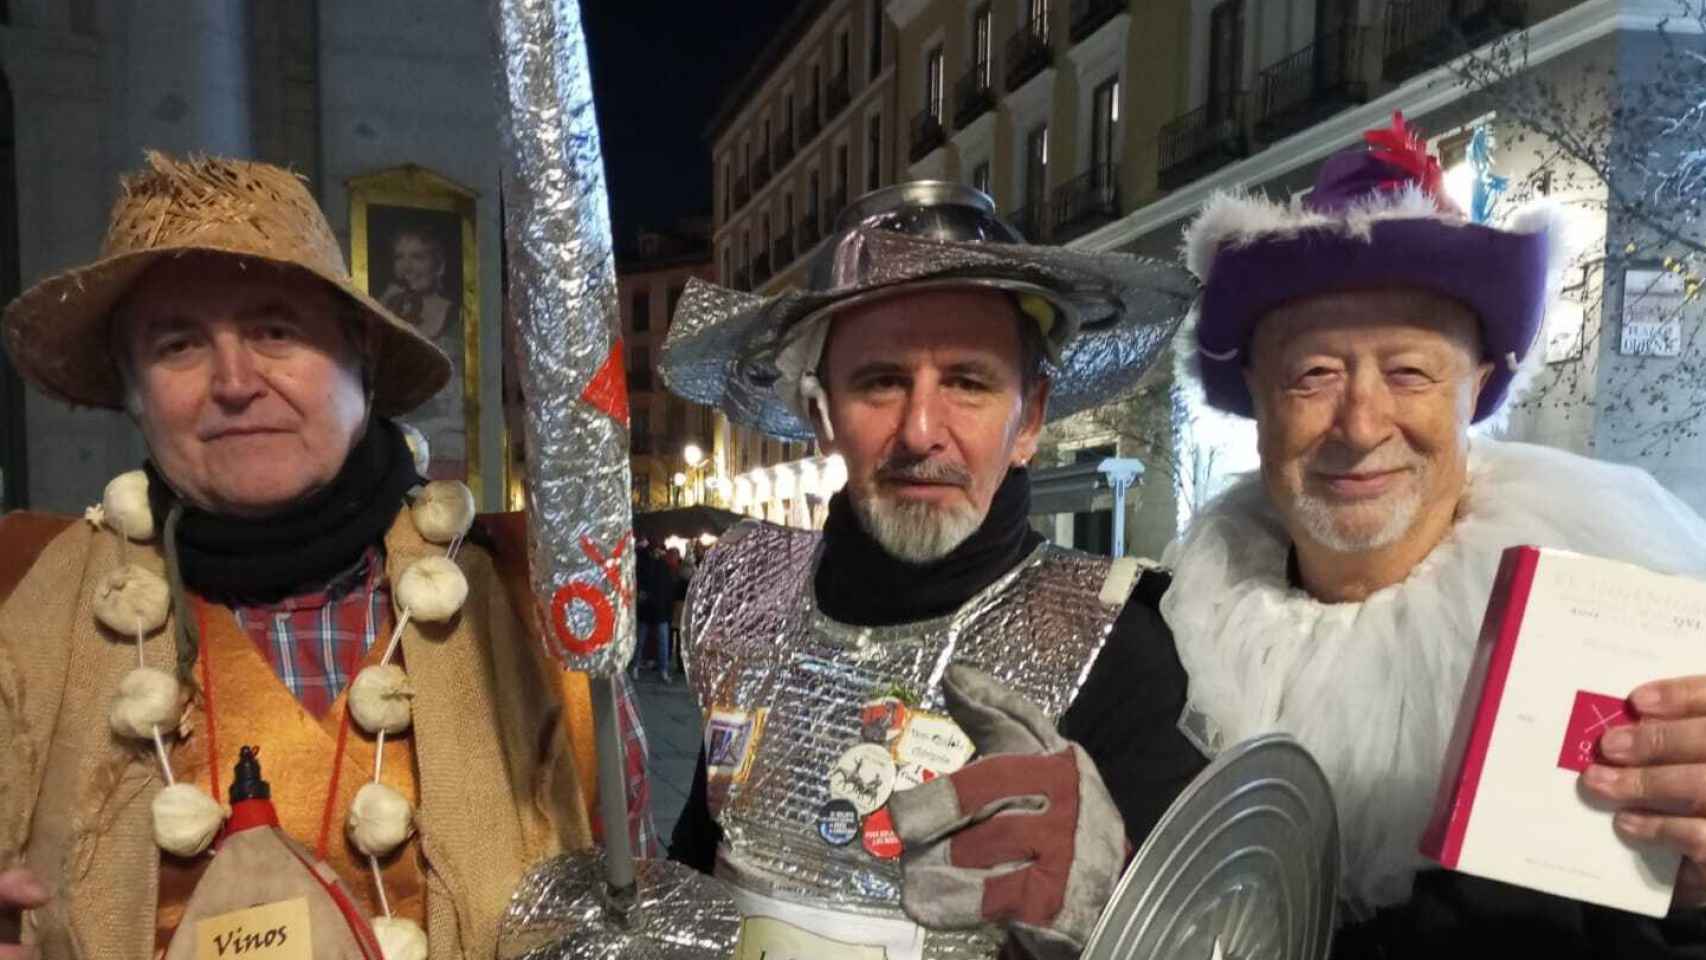 En medio, José Antonio Toro, gaditano de 59 años disfrazado de Don Quijote y protagonista del rap de la Lotería.